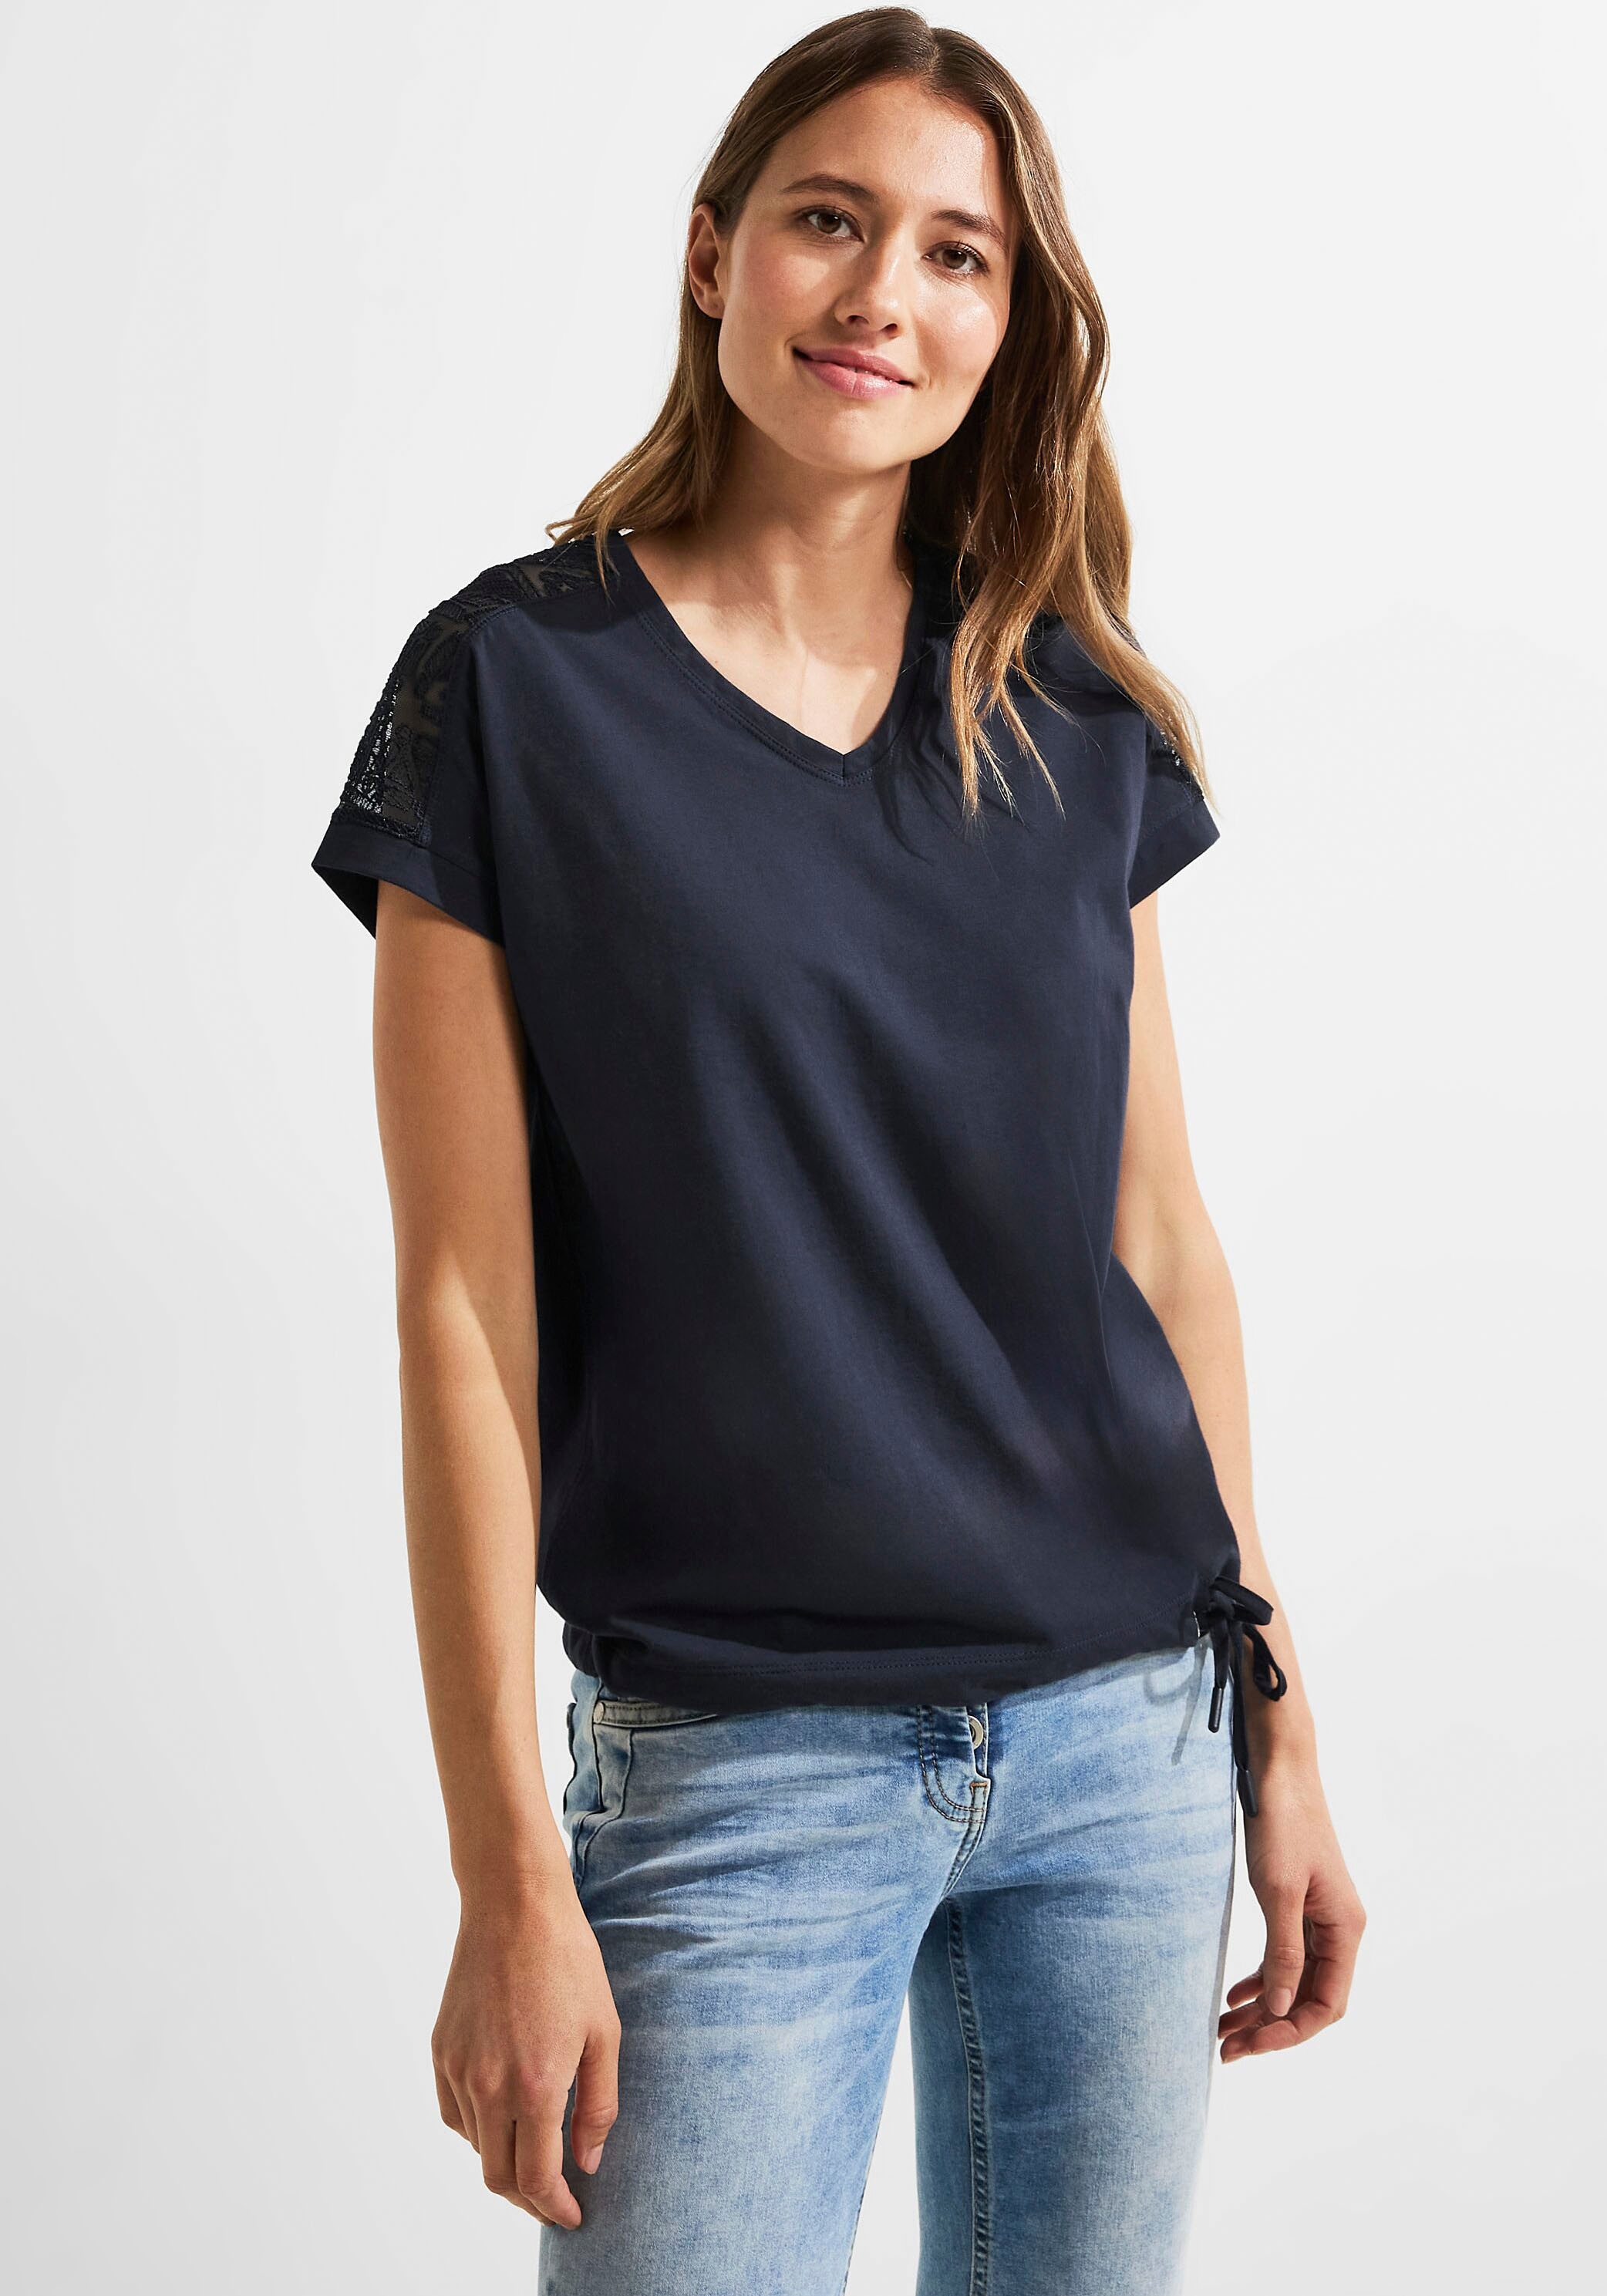 Cecil T-Shirt, mit leicht -Ausschnitt bei OTTOversand V abgerundetem